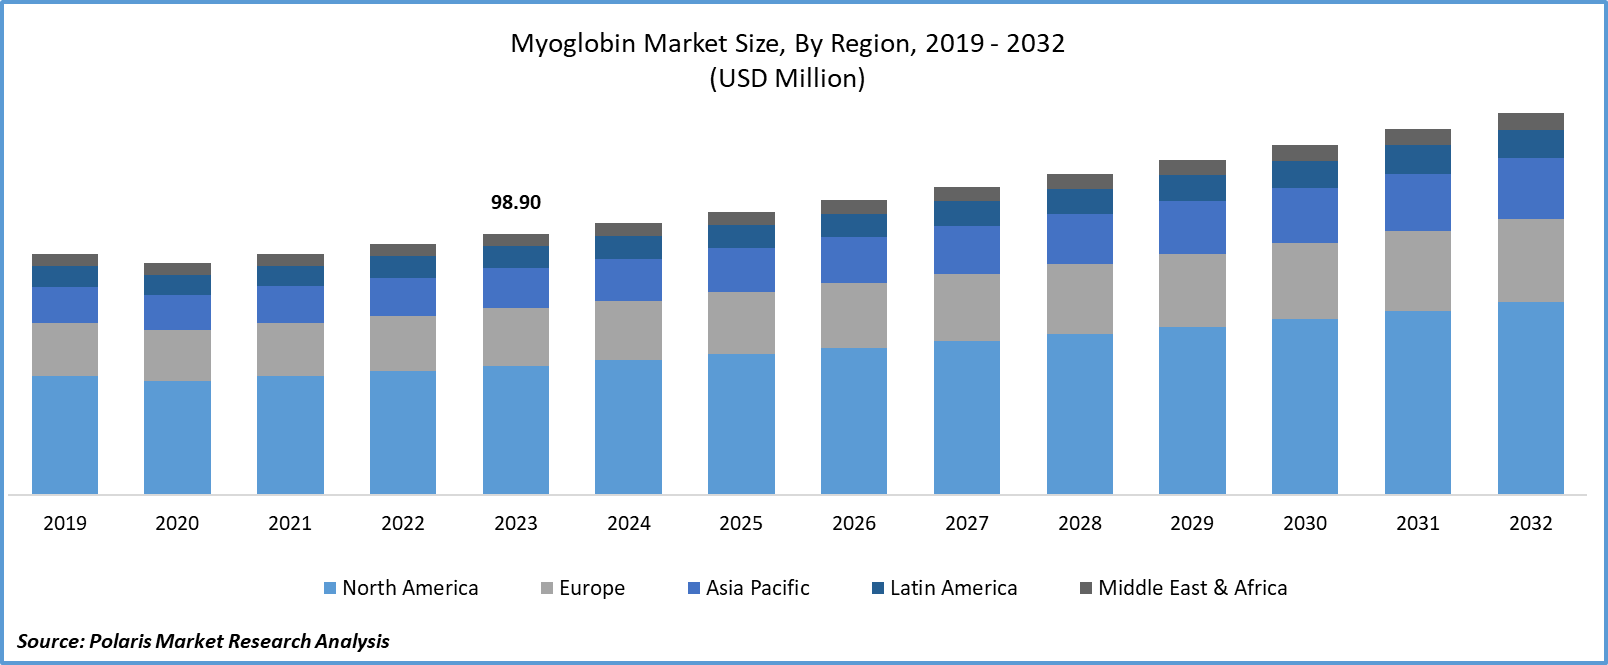 Myoglobin Market Size